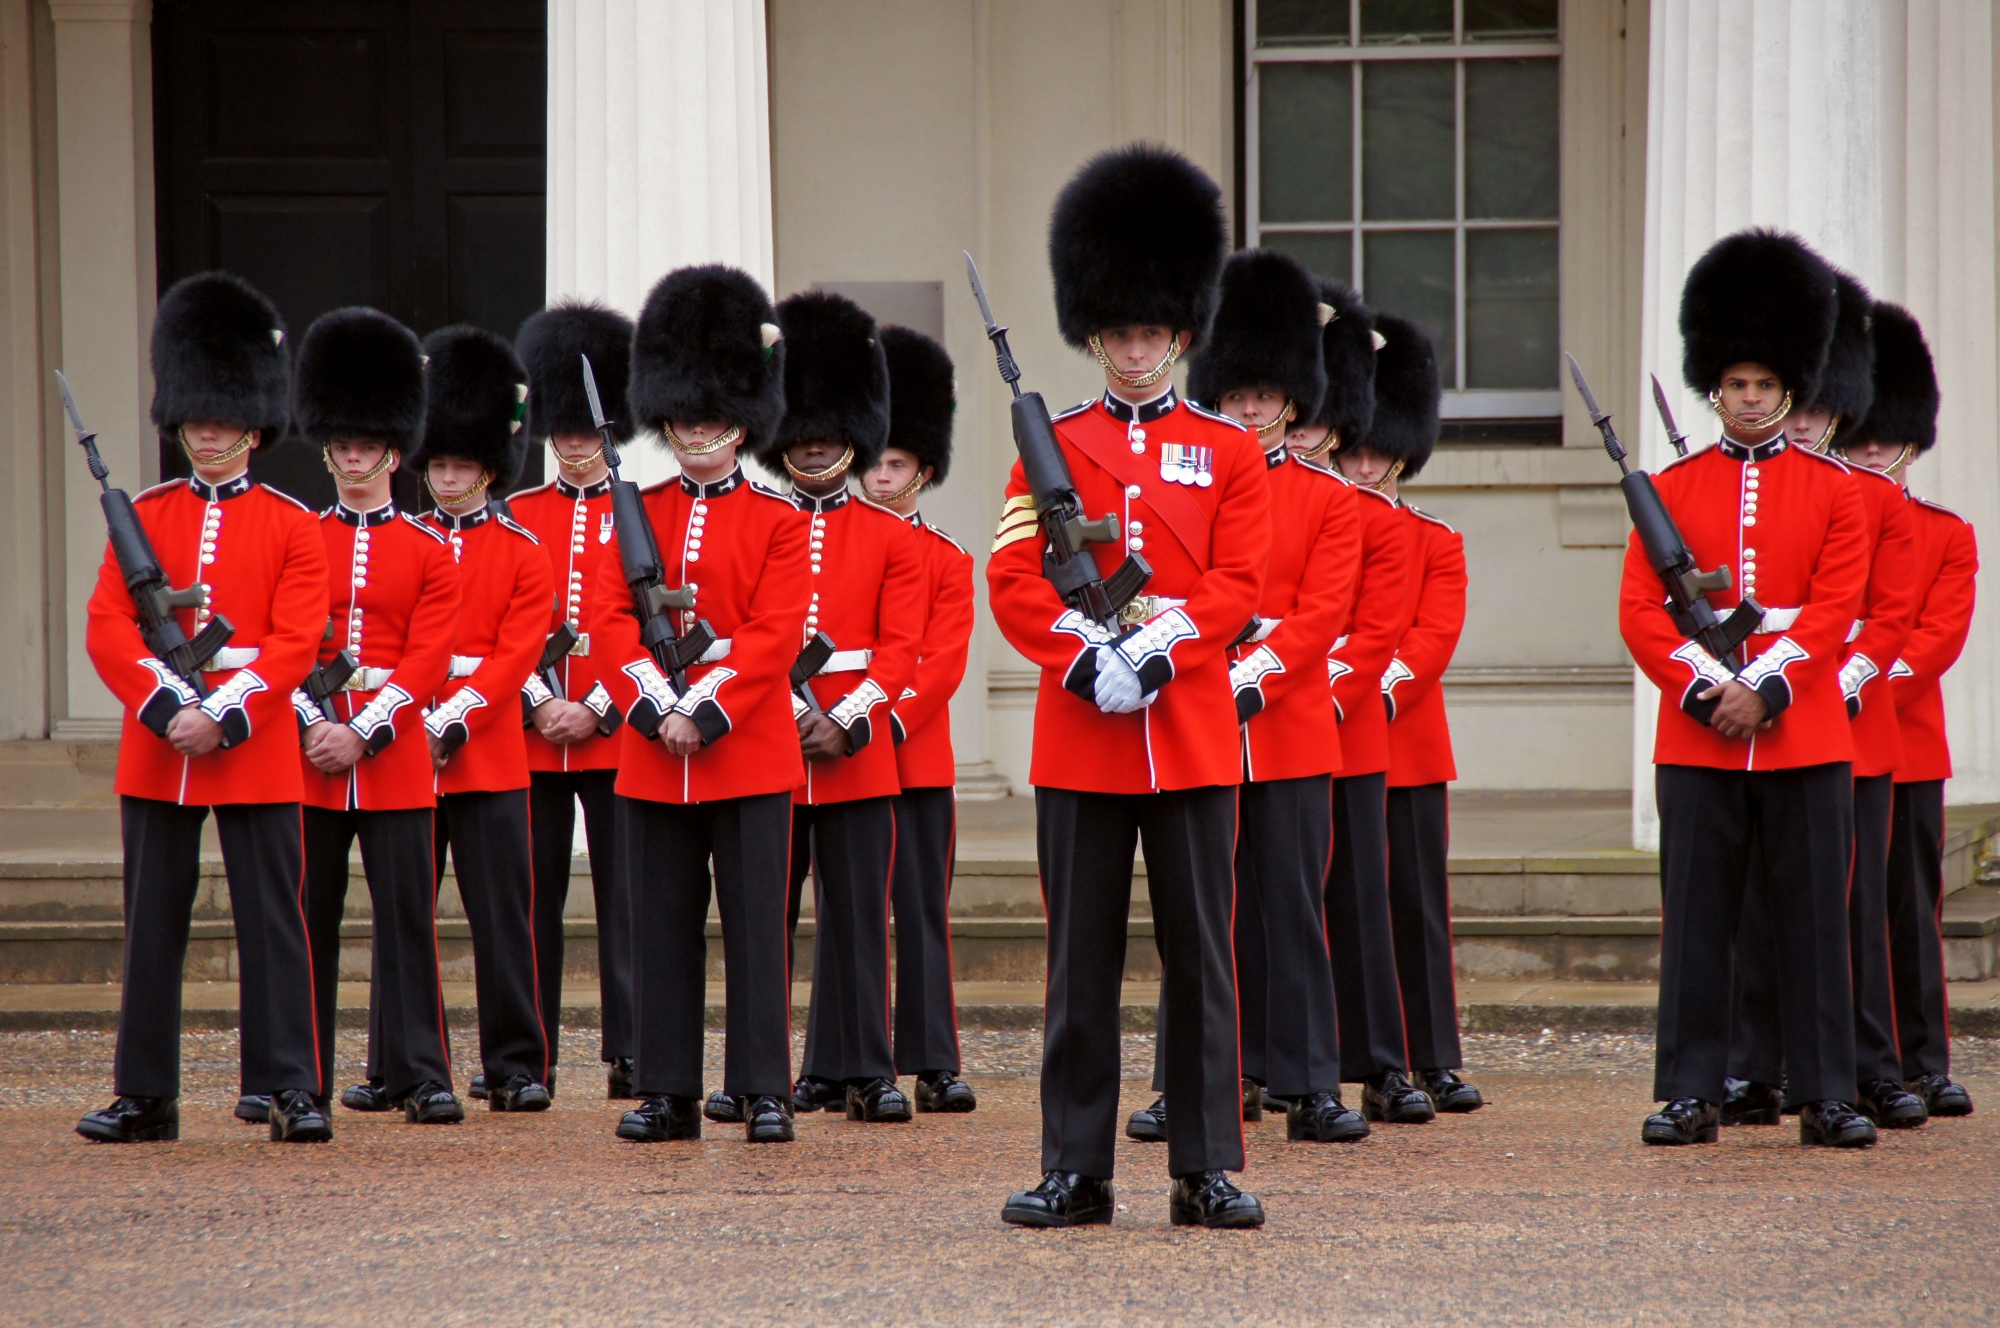 Buckingham Palace Guards | Elaborate